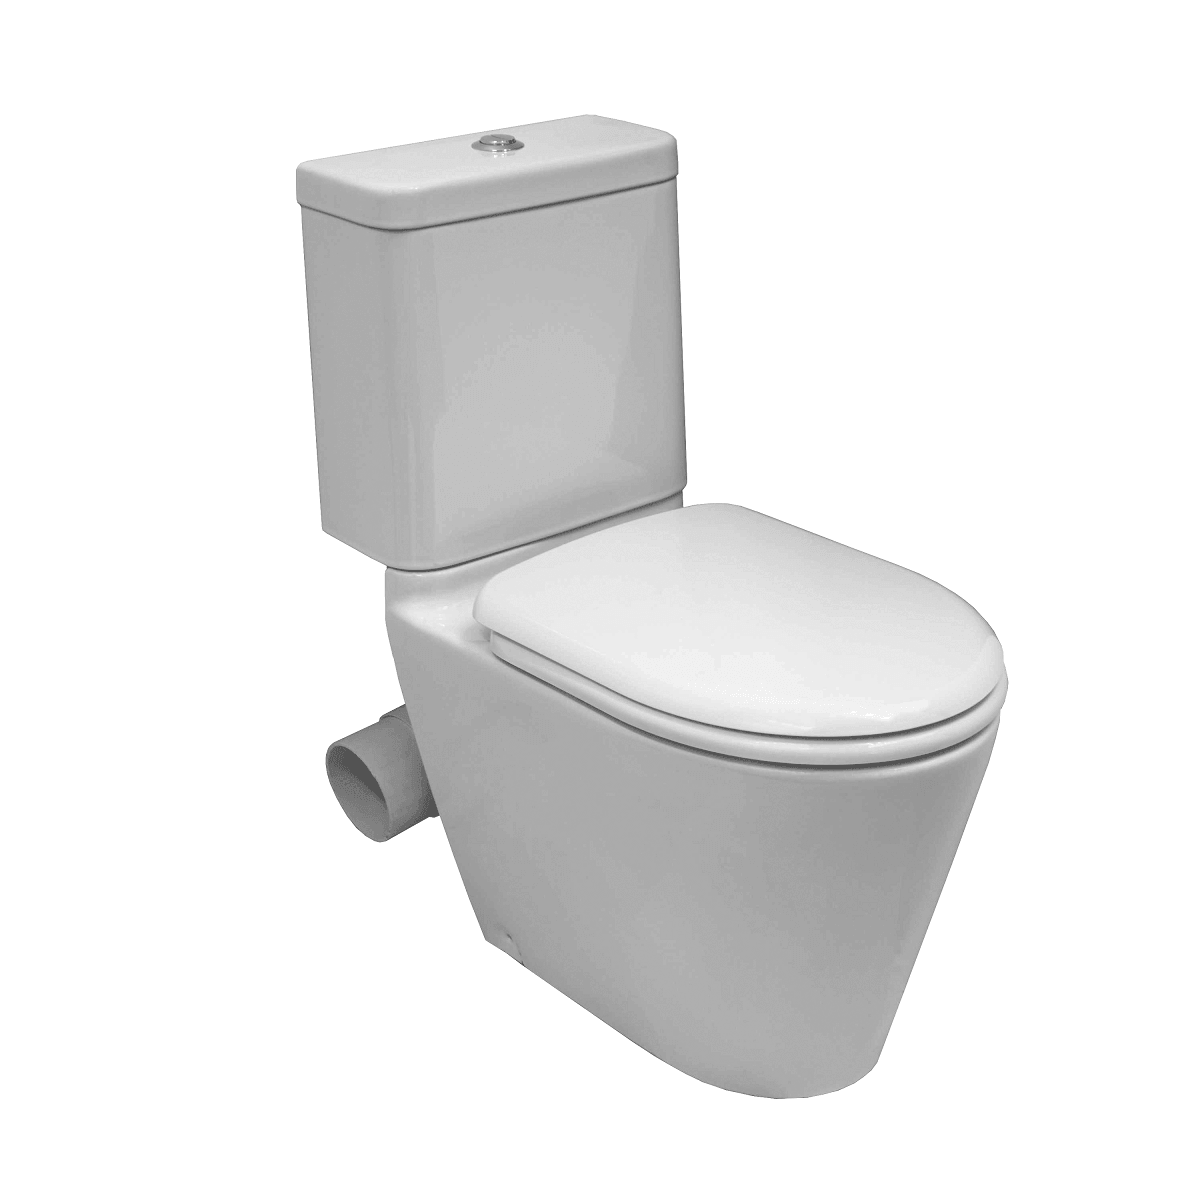 The best valued toilet skew pan in Bayswater from Infinity Plus Bathrooms